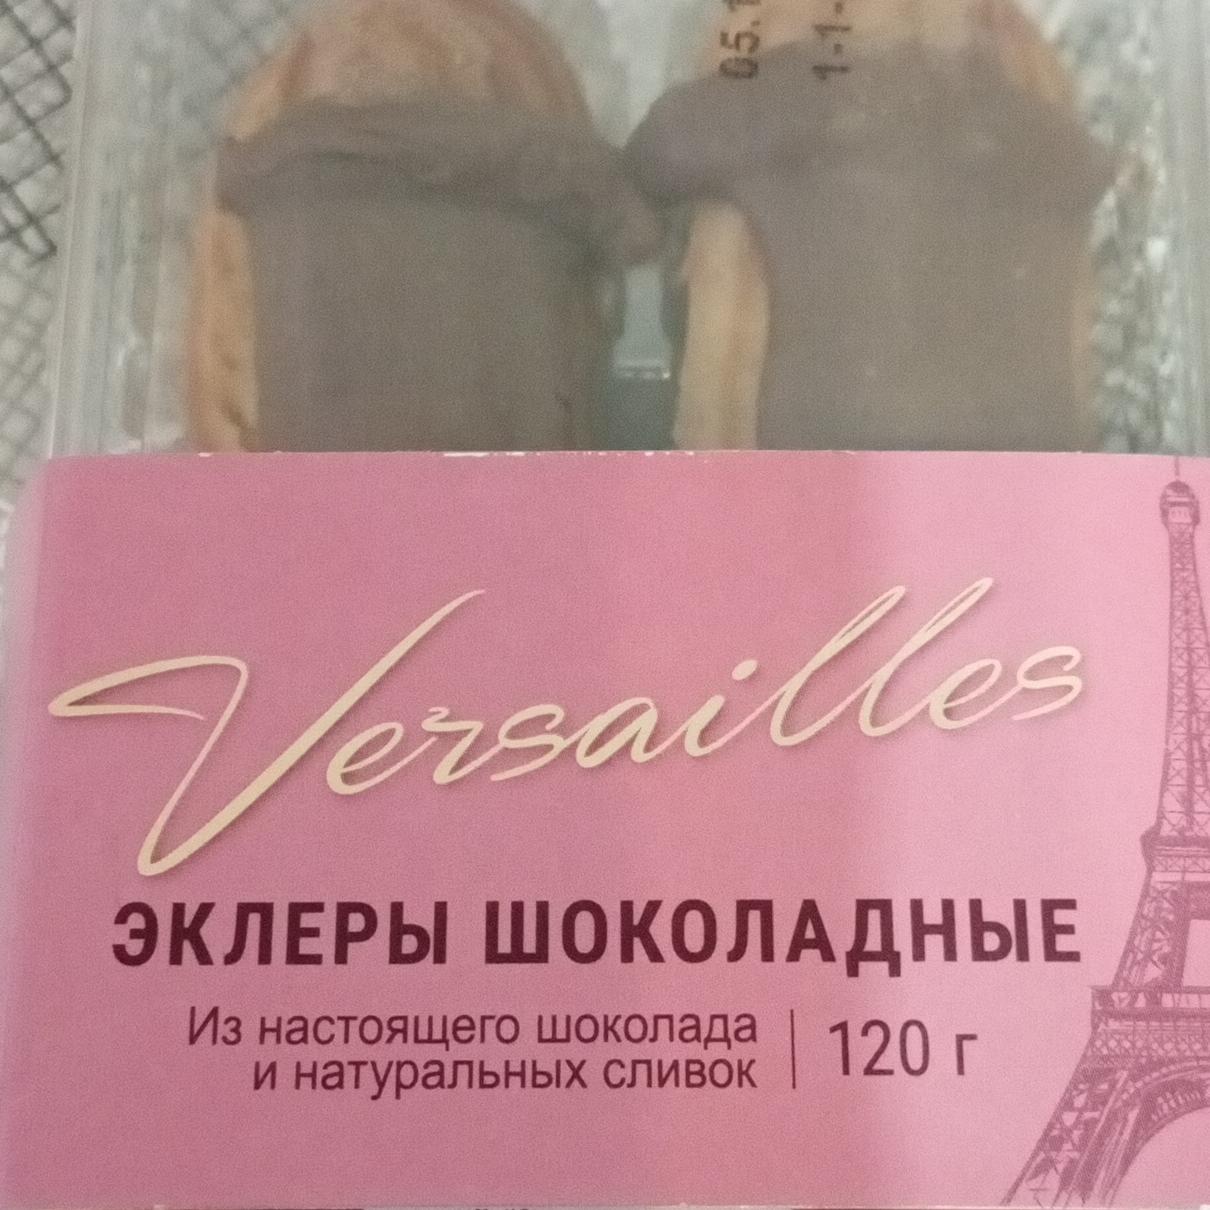 Фото - Эклеры шоколадные Versailles